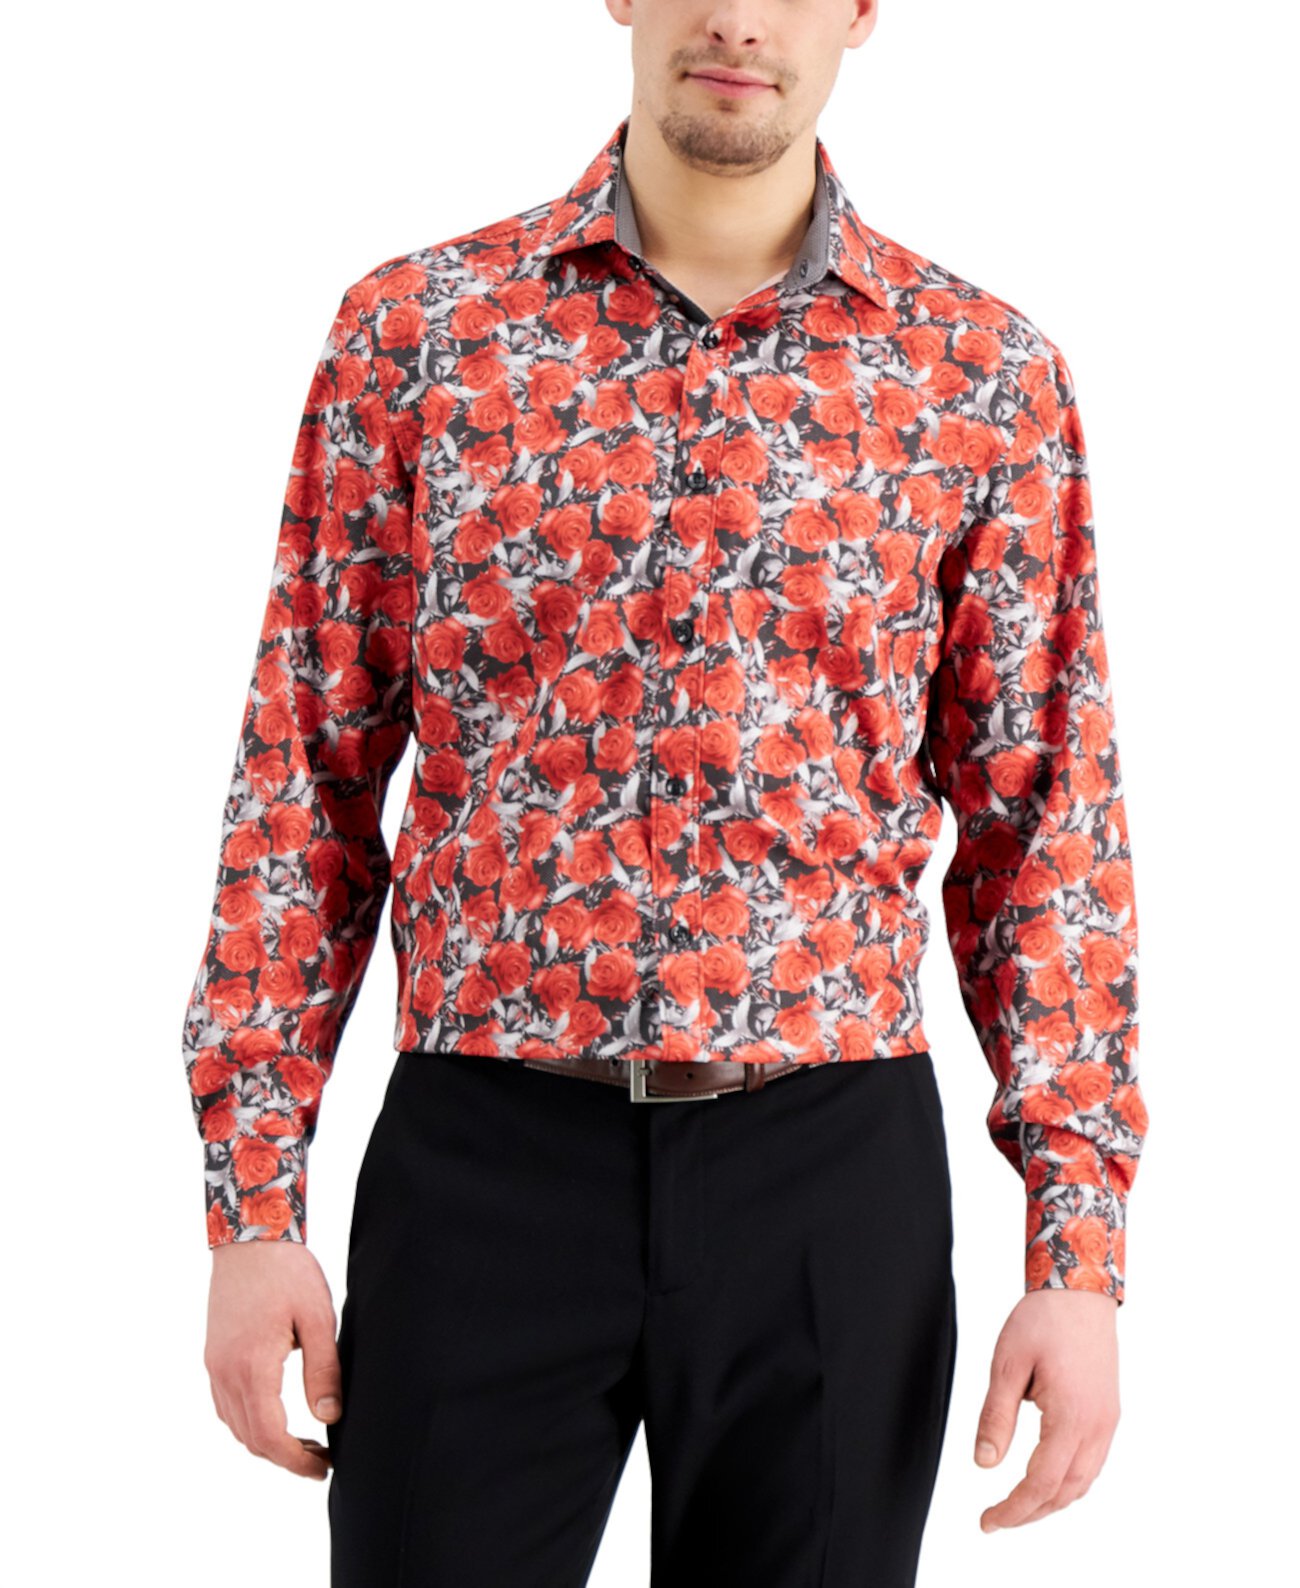 Мужская приталенная классическая рубашка из эластичного материала без железа с цветочным принтом в горошек и плиссированной маской для лица Tallia